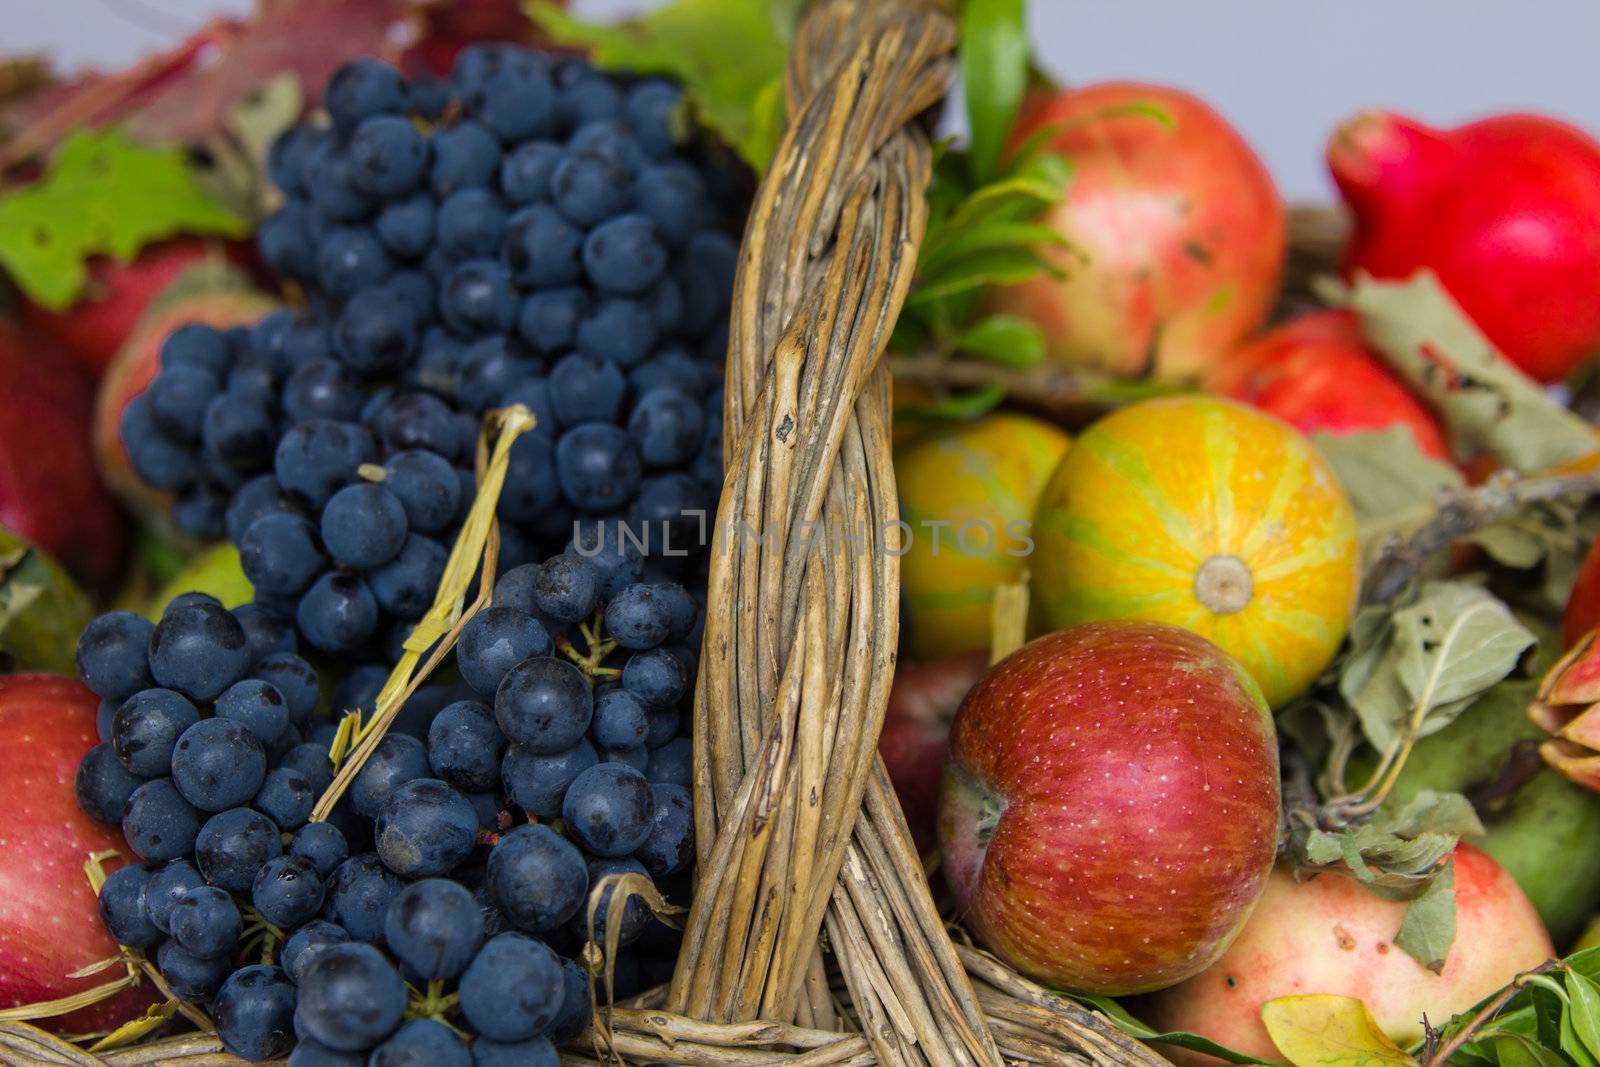 Apples, grapes, pumpkins in a wicker basket by huntz